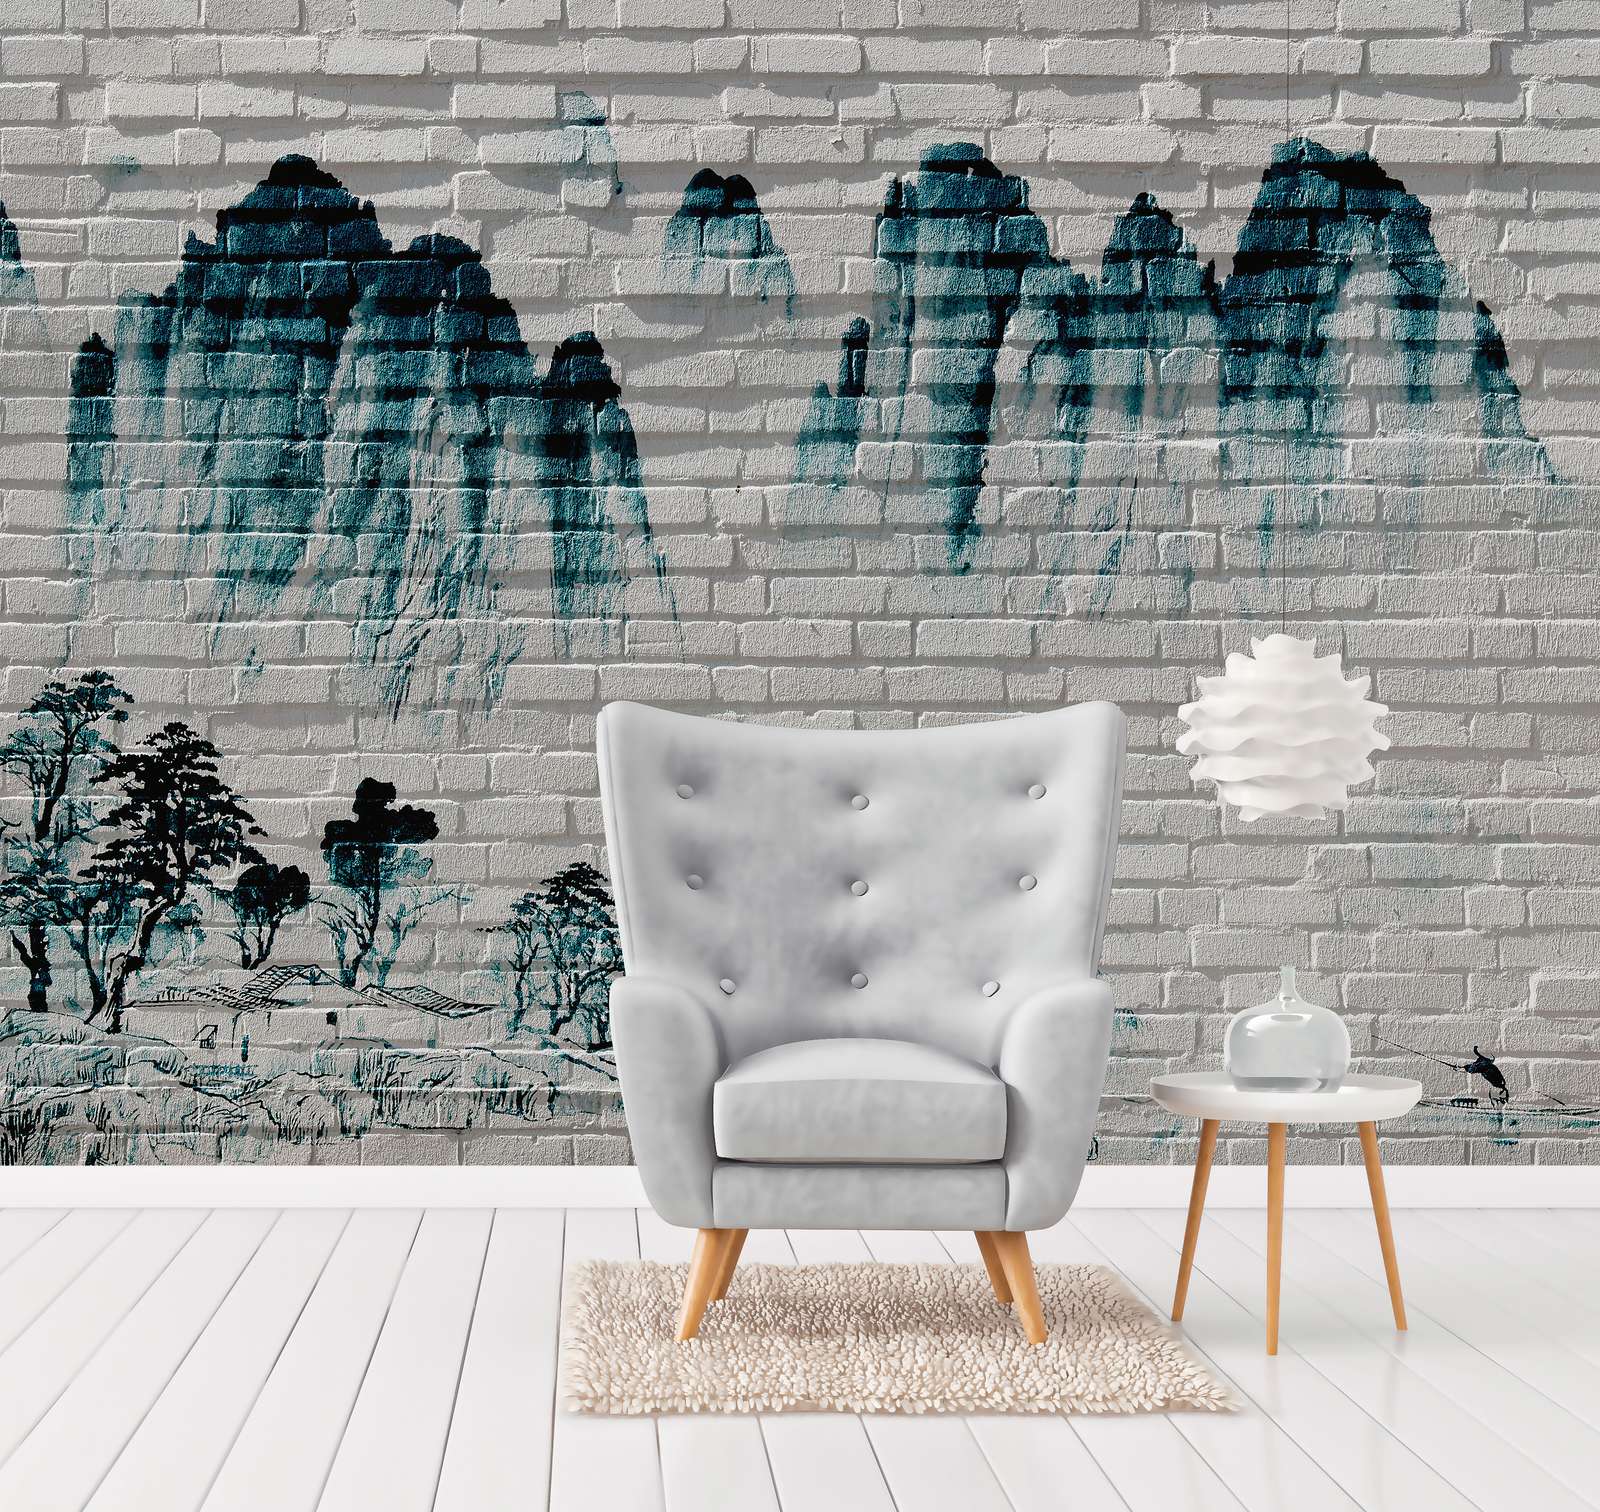             Fototapete Berge auf Backsteinmauer – Blau, Weiß
        